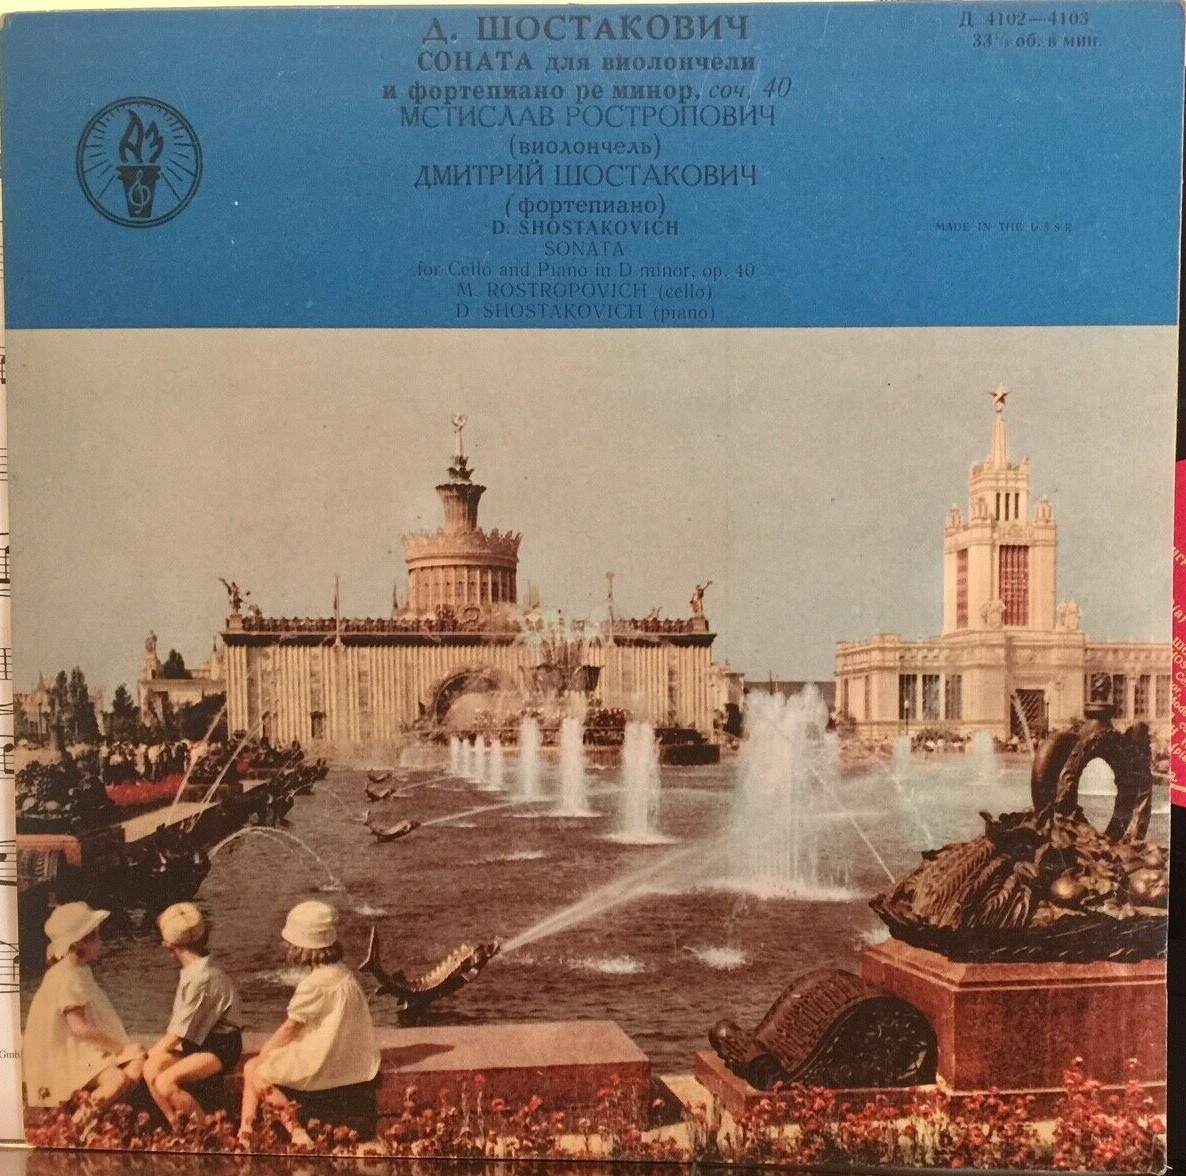 Д. Шостакович: Соната для виолончели и ф-но